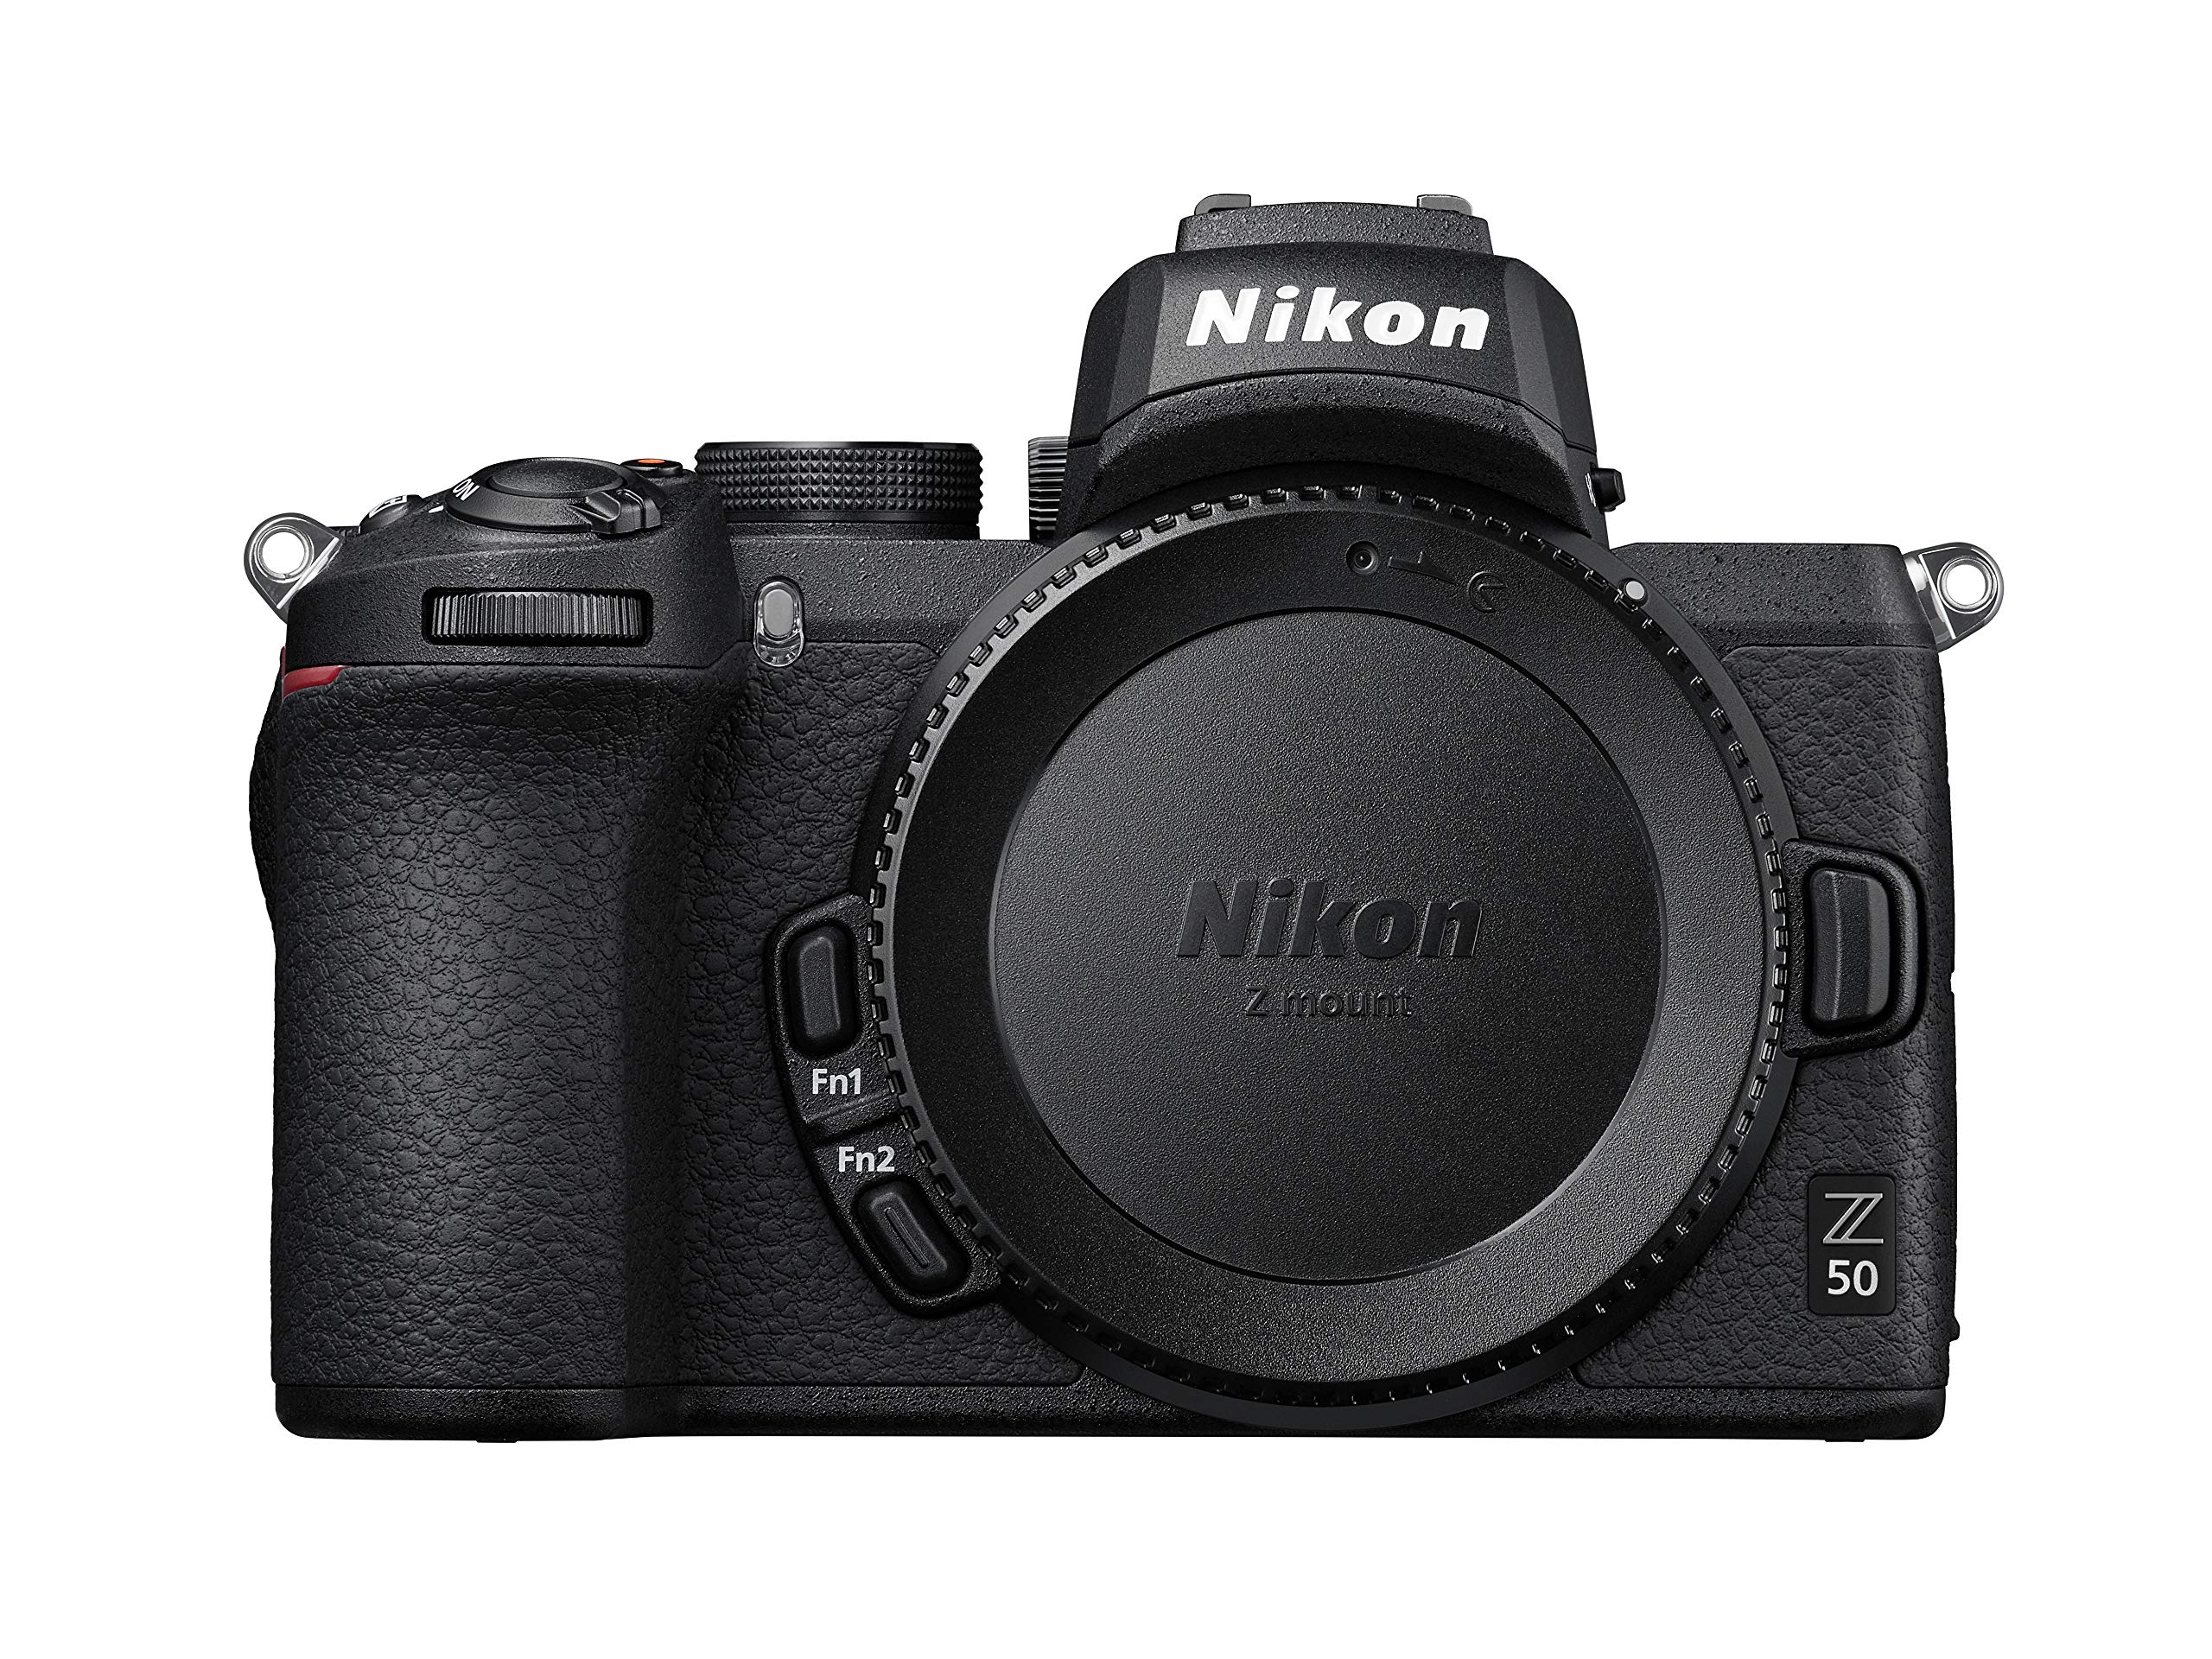 Nikon Z 50 Spiegellose Kamera im DX-Format (20,9 MP, OLED-Sucher mit 2,36 Millionen Bildpunkten, 11 Bilder pro Sekunde, Hybrid-AF mit Fokus-Assistent, ISO 100-51.200, 4K UHD Video)